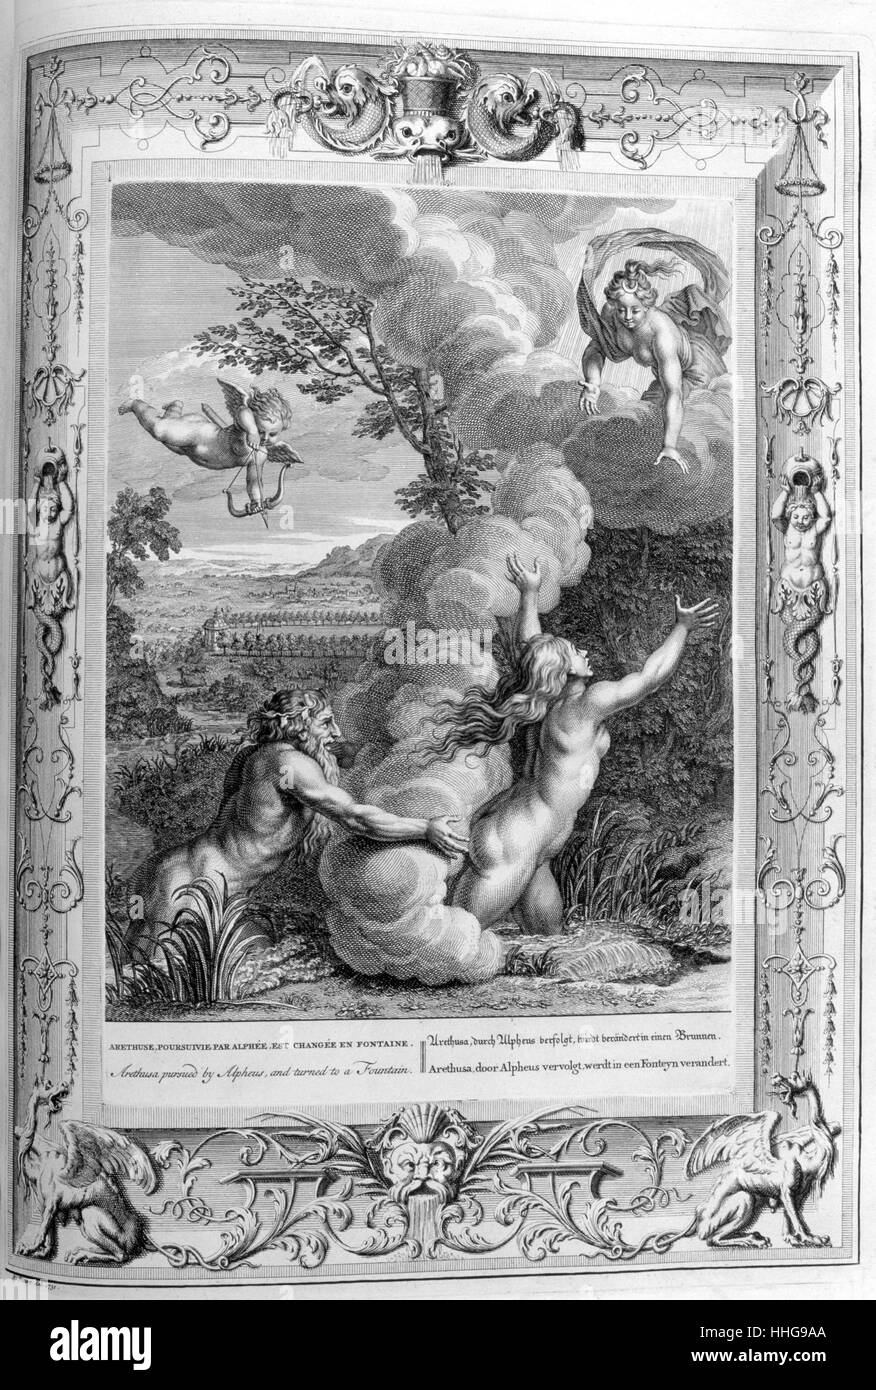 Arethusa, graviert Abbildung von der "Tempel der Musen", 1733. Dieses Buch vertreten bemerkenswerte Ereignisse der Antike erstellt und von Bernard Picart graviert (1673-1733). Arethusa. Gravur von "Tableaux du Temple des muses" (1655) von Michel de Marolles (1600 - 1681), bekannt als der Abbé de Marolles; eine französische Kirchenmann und Übersetzer. Laut Pausanias, Alpheius war ein leidenschaftlicher Jäger und verliebte sich in die Nymphe Arethusa, aber sie floh vor ihm auf der Insel Ortygia in der Nähe von Syrakus, und verwandelt sich in einen Gut, nach dem Alpheius wurde ein Fluss, Stockfoto